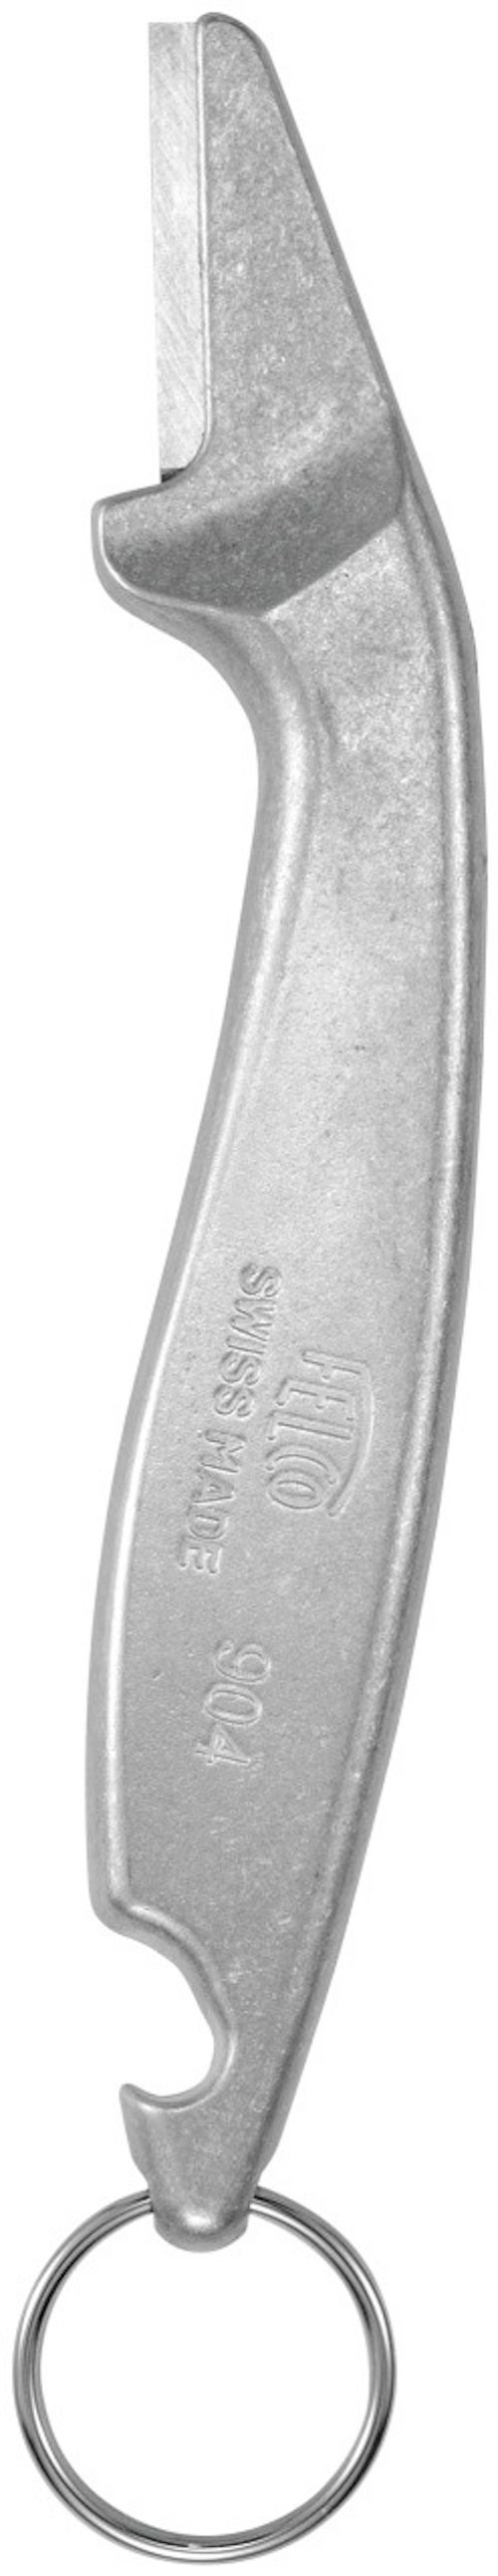 Felco 904 Sharpening tool | Sharpener - AusPots